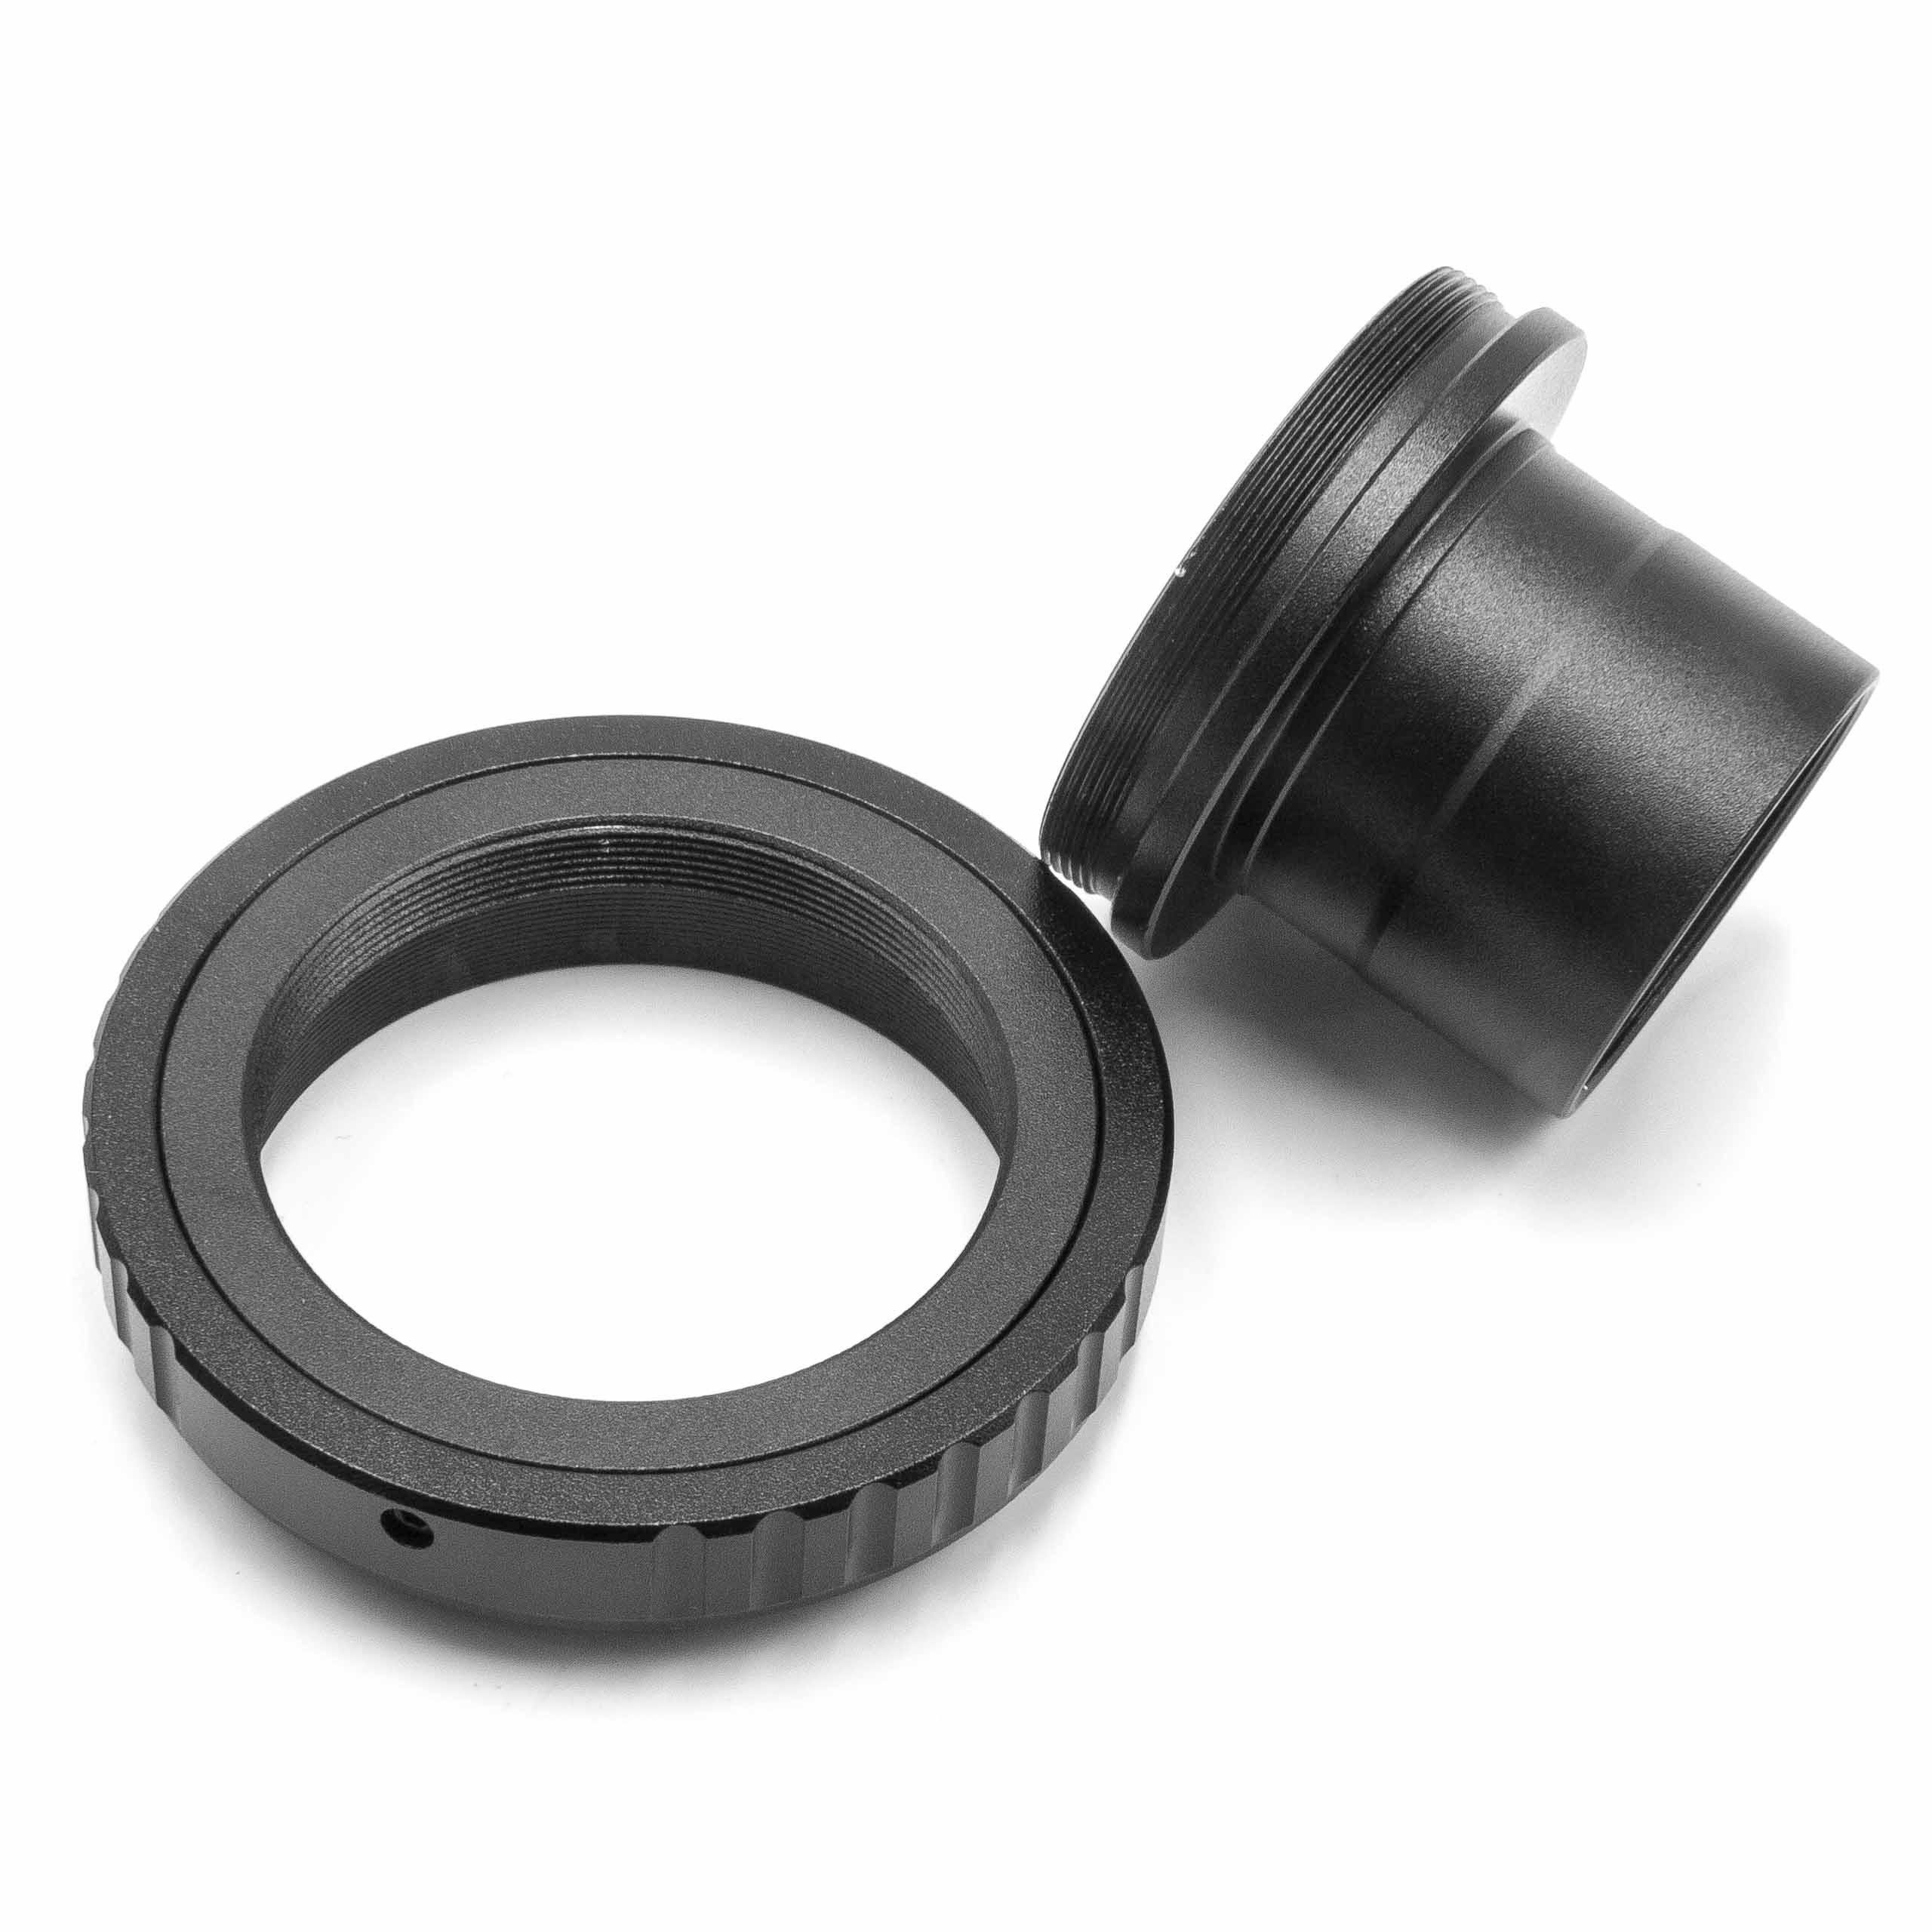 vhbw passend für Minolta AF T2 Objektivzubehör mit Gewindeanschluss Kamera